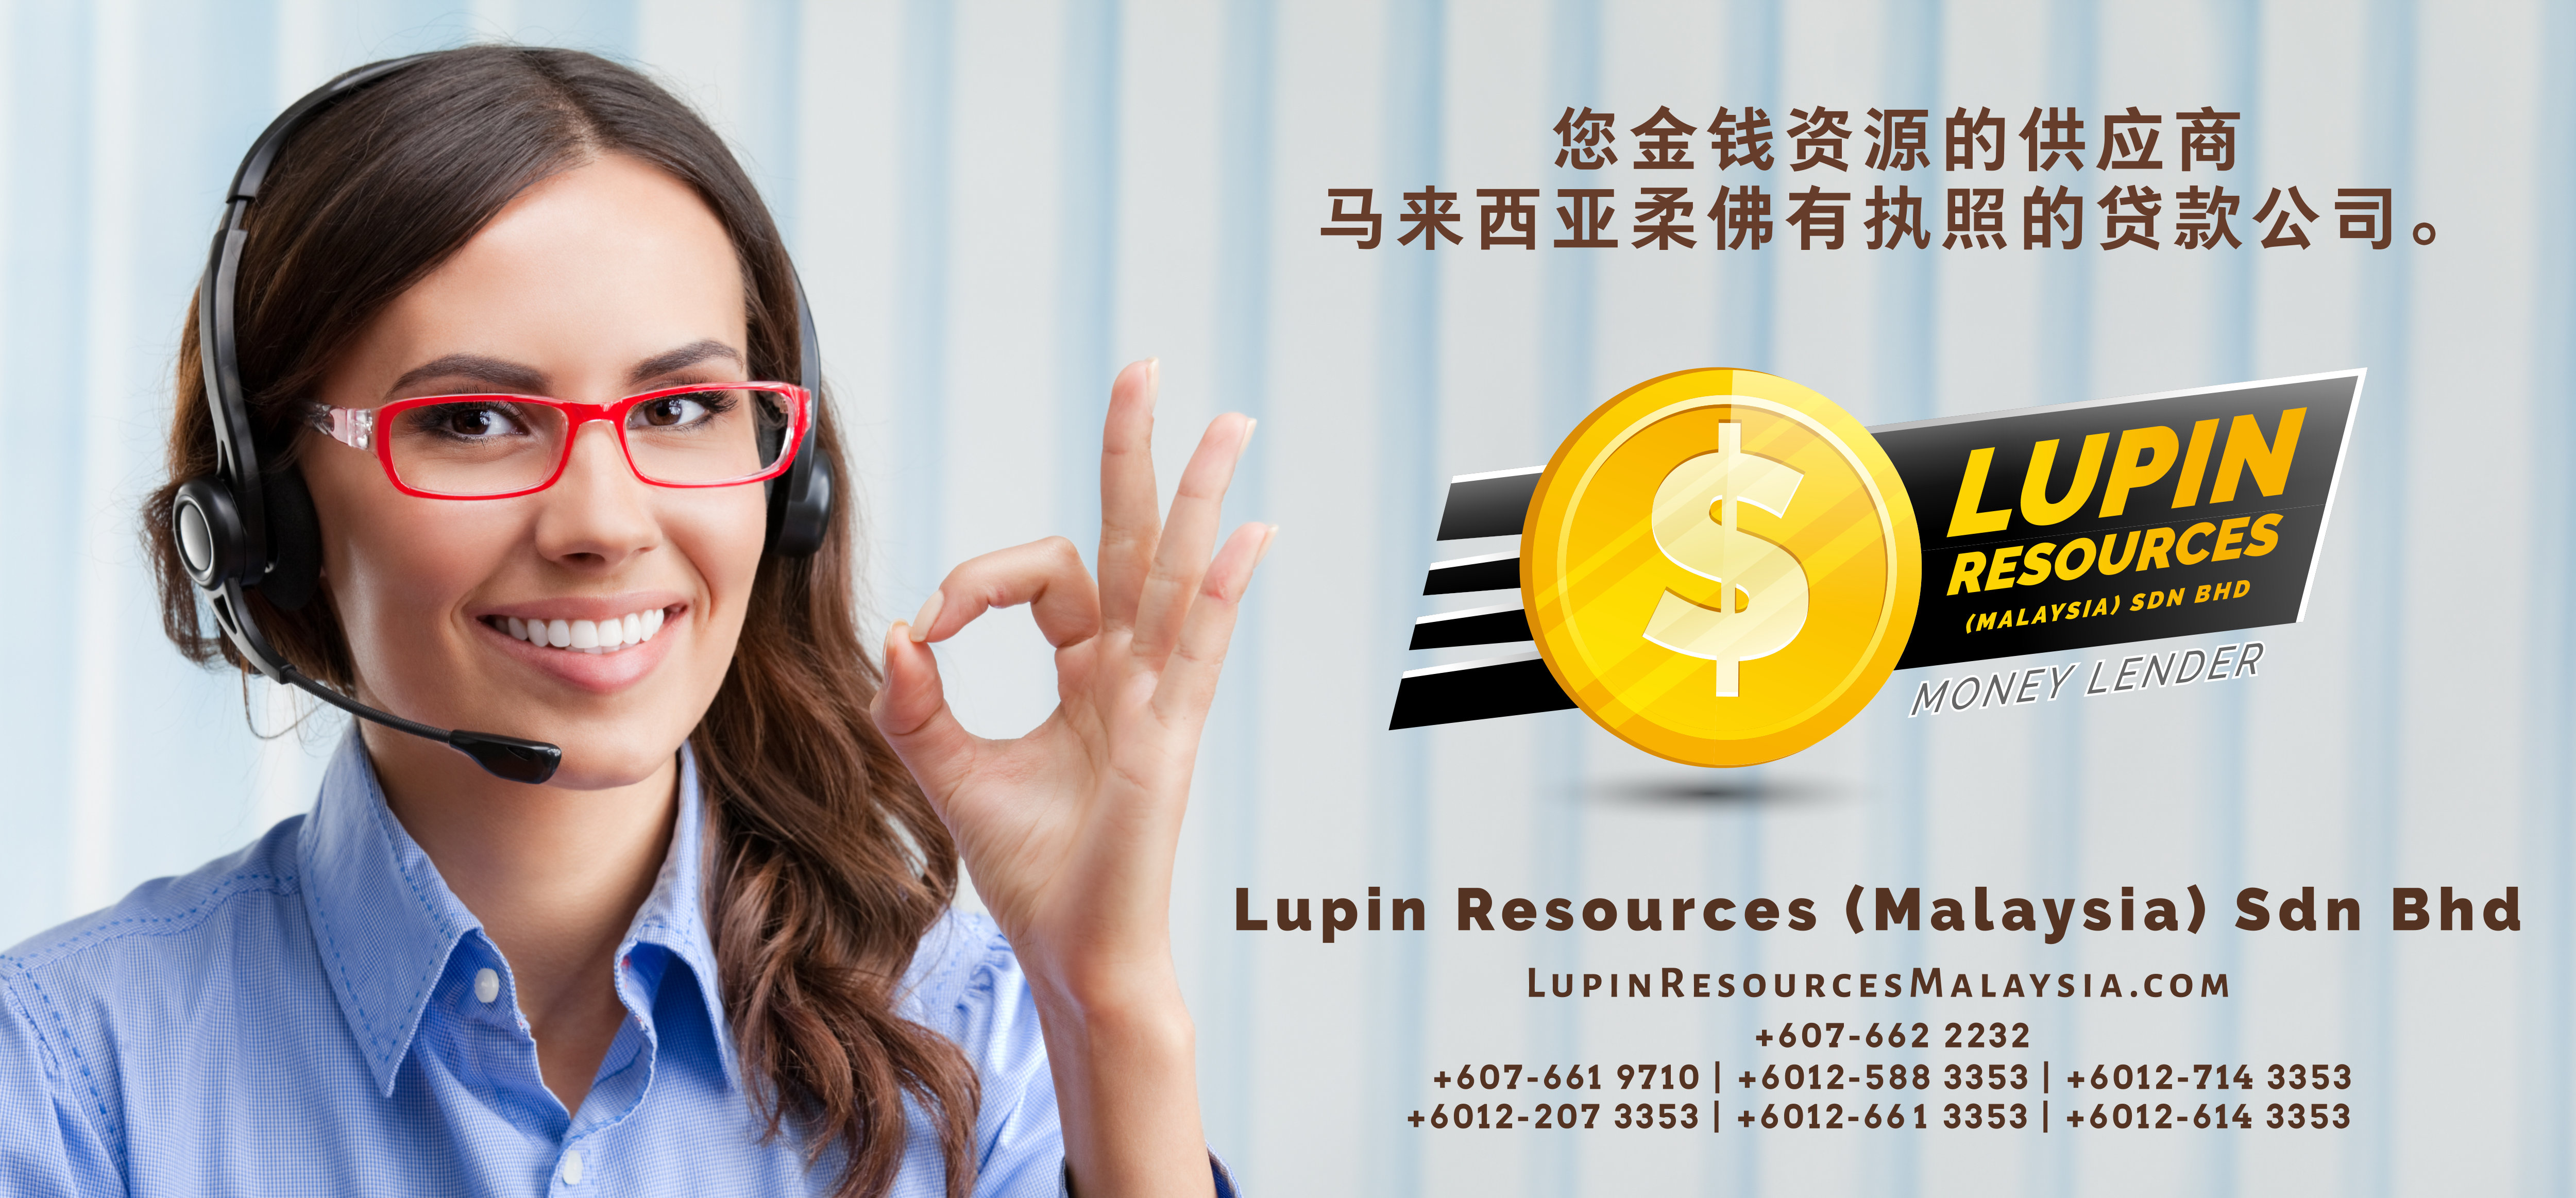 柔佛有执照的贷款公司 Lupin Resources Malaysia SDN BHD 您金钱资源的供应商 古来 柔佛 马来西亚 个人贷款 商业贷款 低利息抵押代款 经济 A01-33